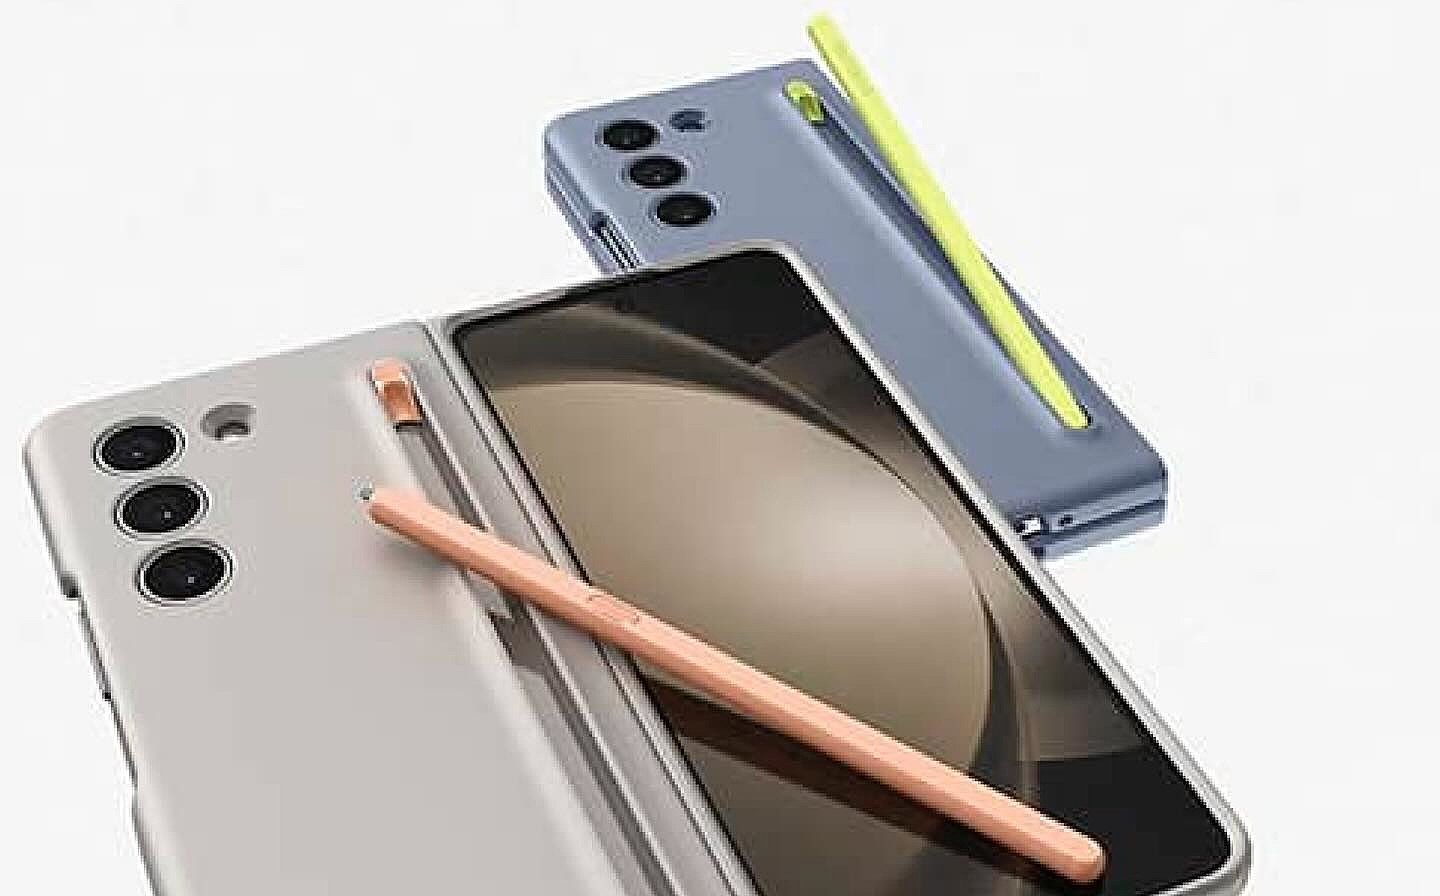 消息称三星 Galaxy Z Fold 5 折叠屏新机将推配有 S Pen 笔槽的手机壳 - 2